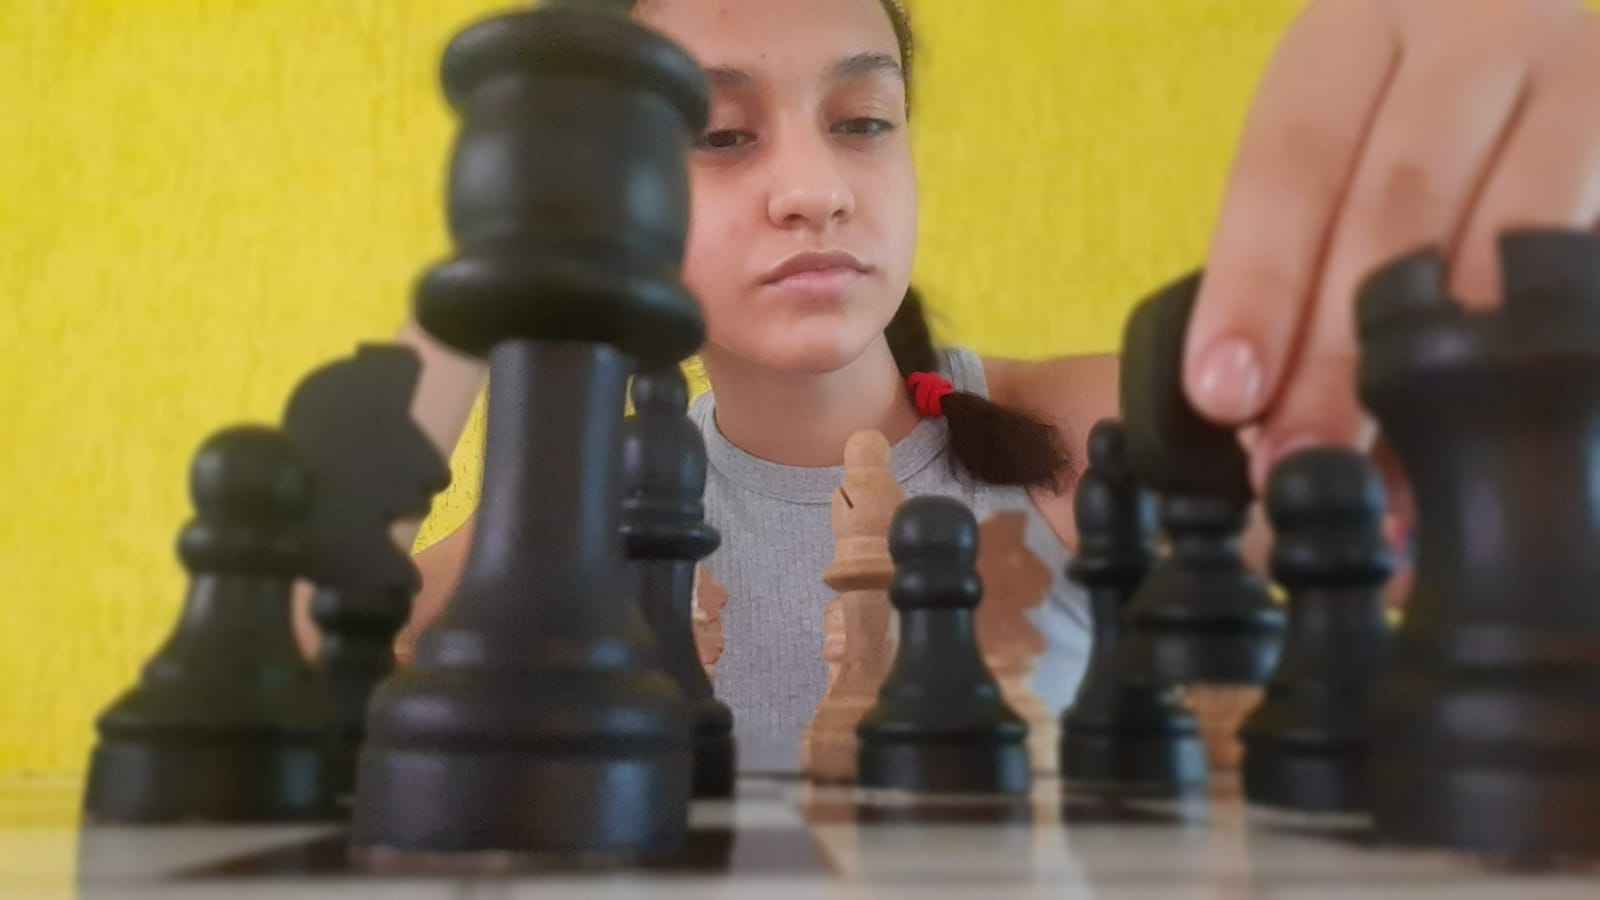 Promessa do xadrez em Goiás é uma garota de 14 anos — Viva Anápolis